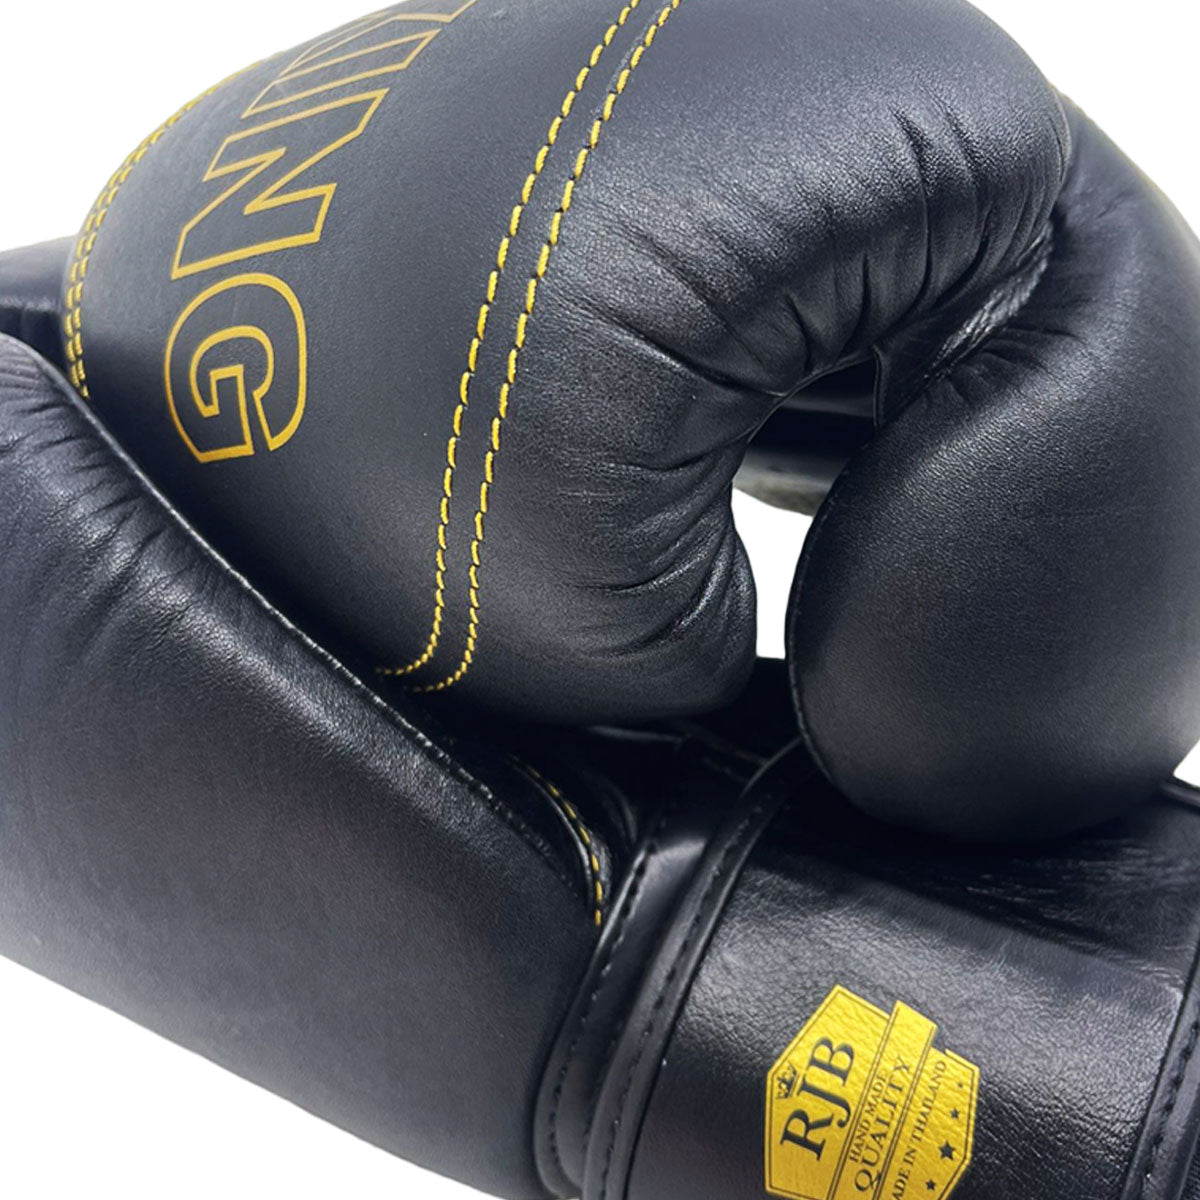 Boxing Gloves Raja RJB-P1 Black Premium "Porsche design" Muay Thai